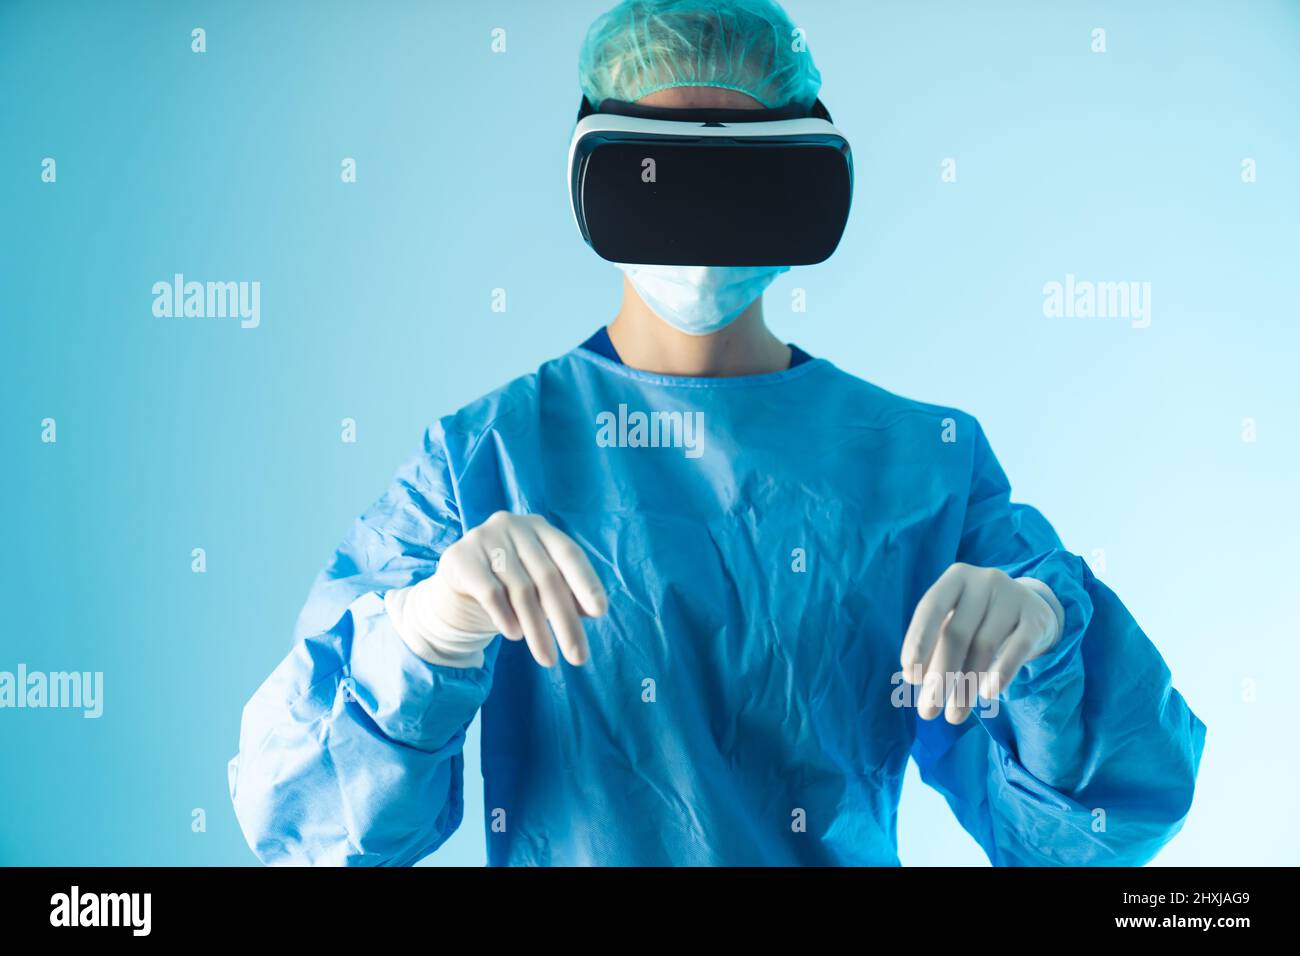 Médecin caucasien utilisant le développement technologique, lunettes de réalité virtuelle. Prise de vue moyenne en studio, fond bleu. Photo de haute qualité Banque D'Images